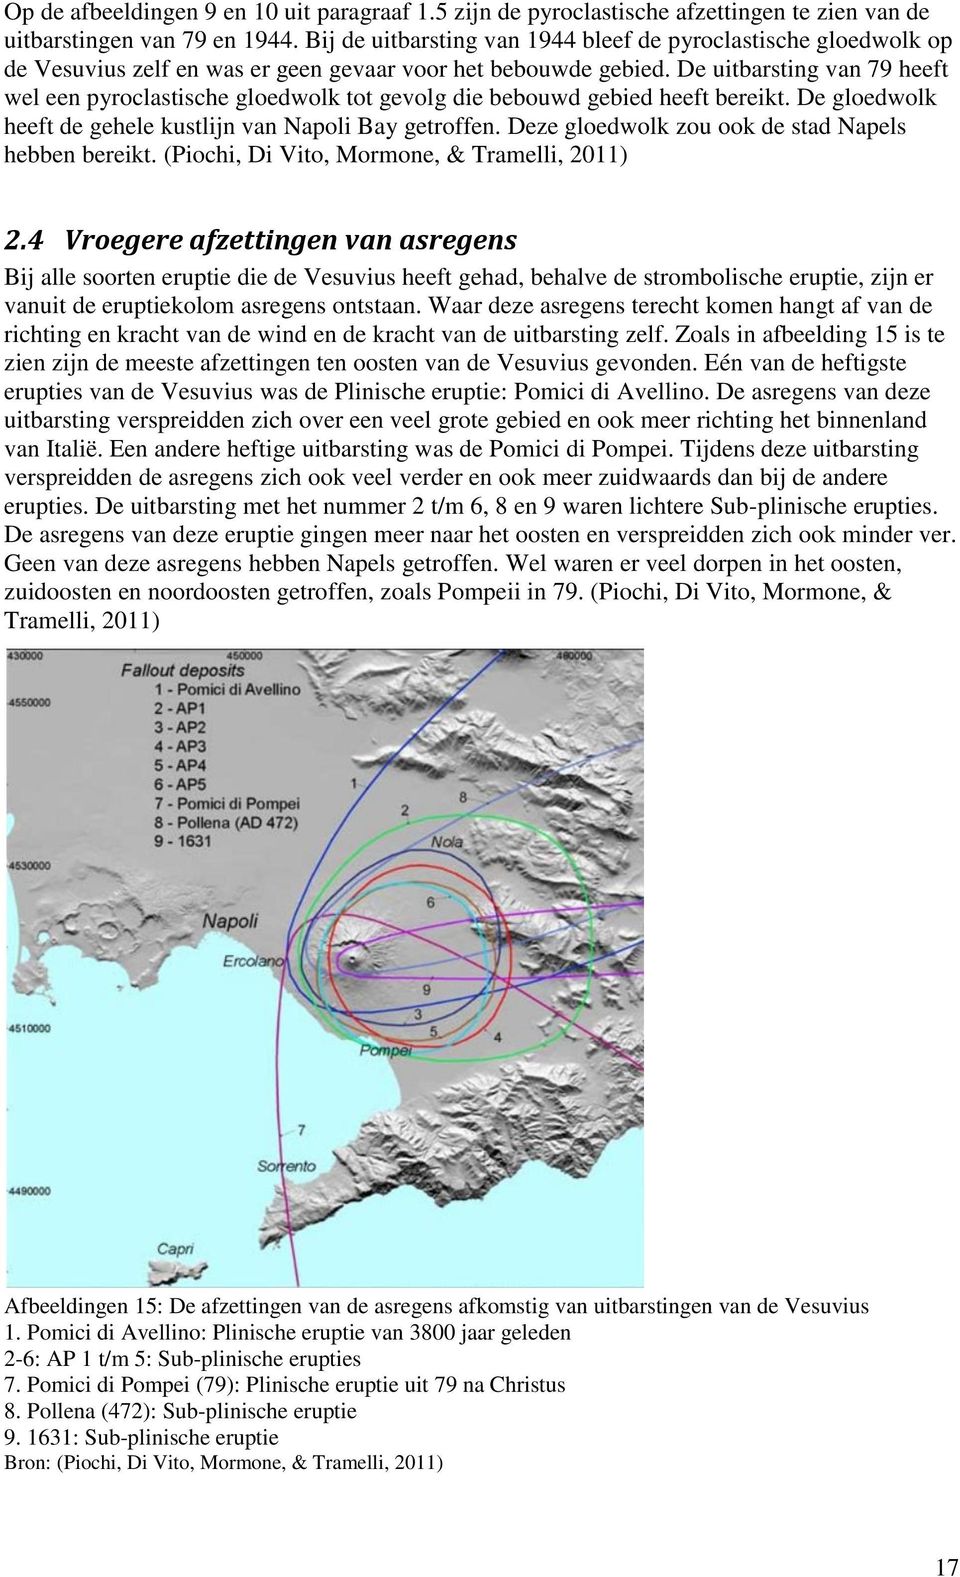 De uitbarsting van 79 heeft wel een pyroclastische gloedwolk tot gevolg die bebouwd gebied heeft bereikt. De gloedwolk heeft de gehele kustlijn van Napoli Bay getroffen.